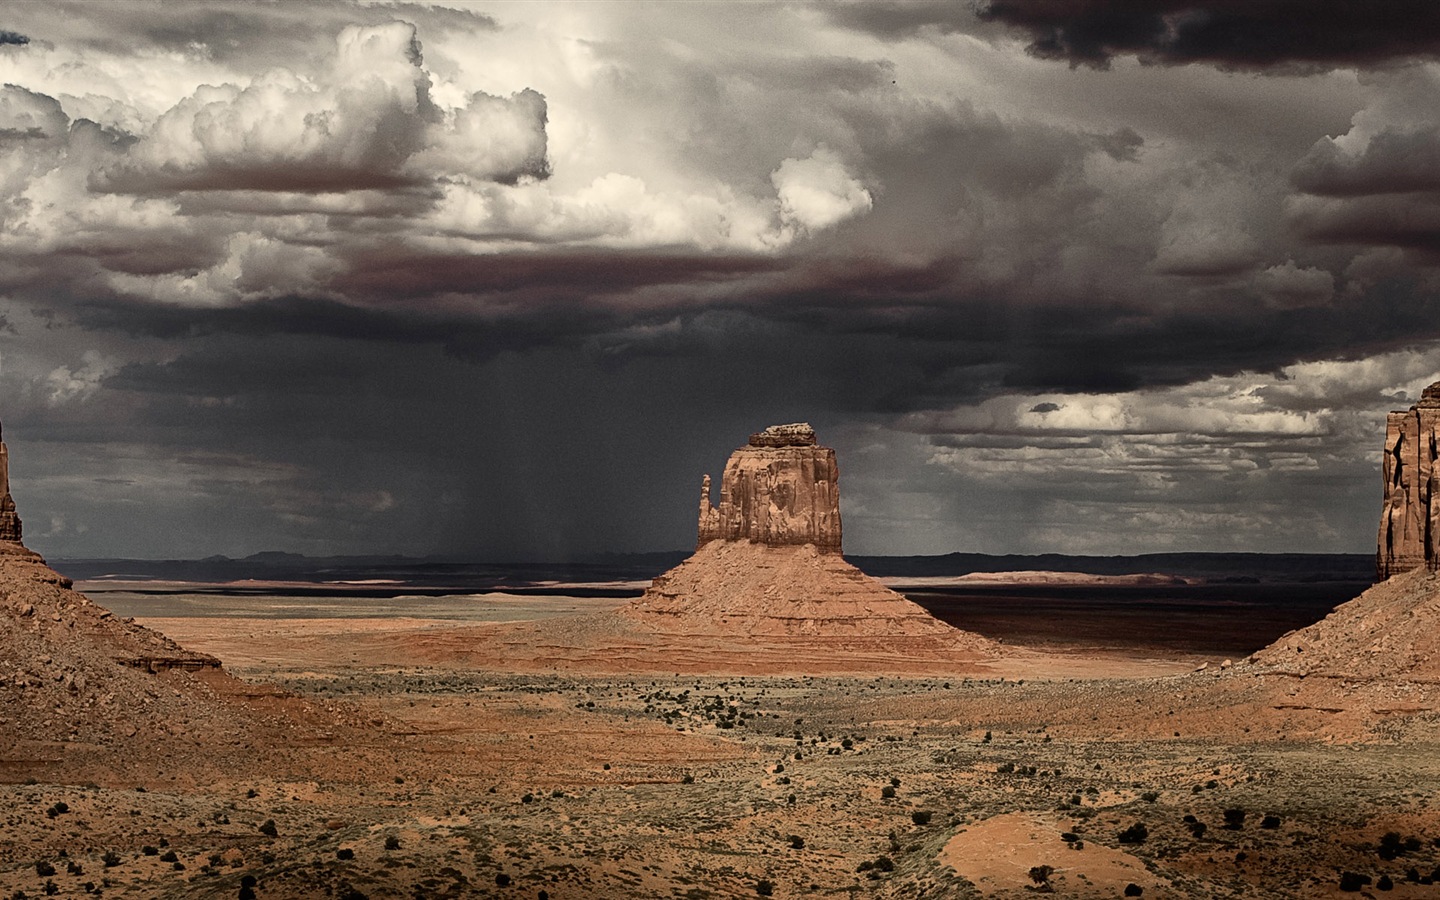 Les déserts chauds et arides, de Windows 8 fonds d'écran widescreen panoramique #7 - 1440x900